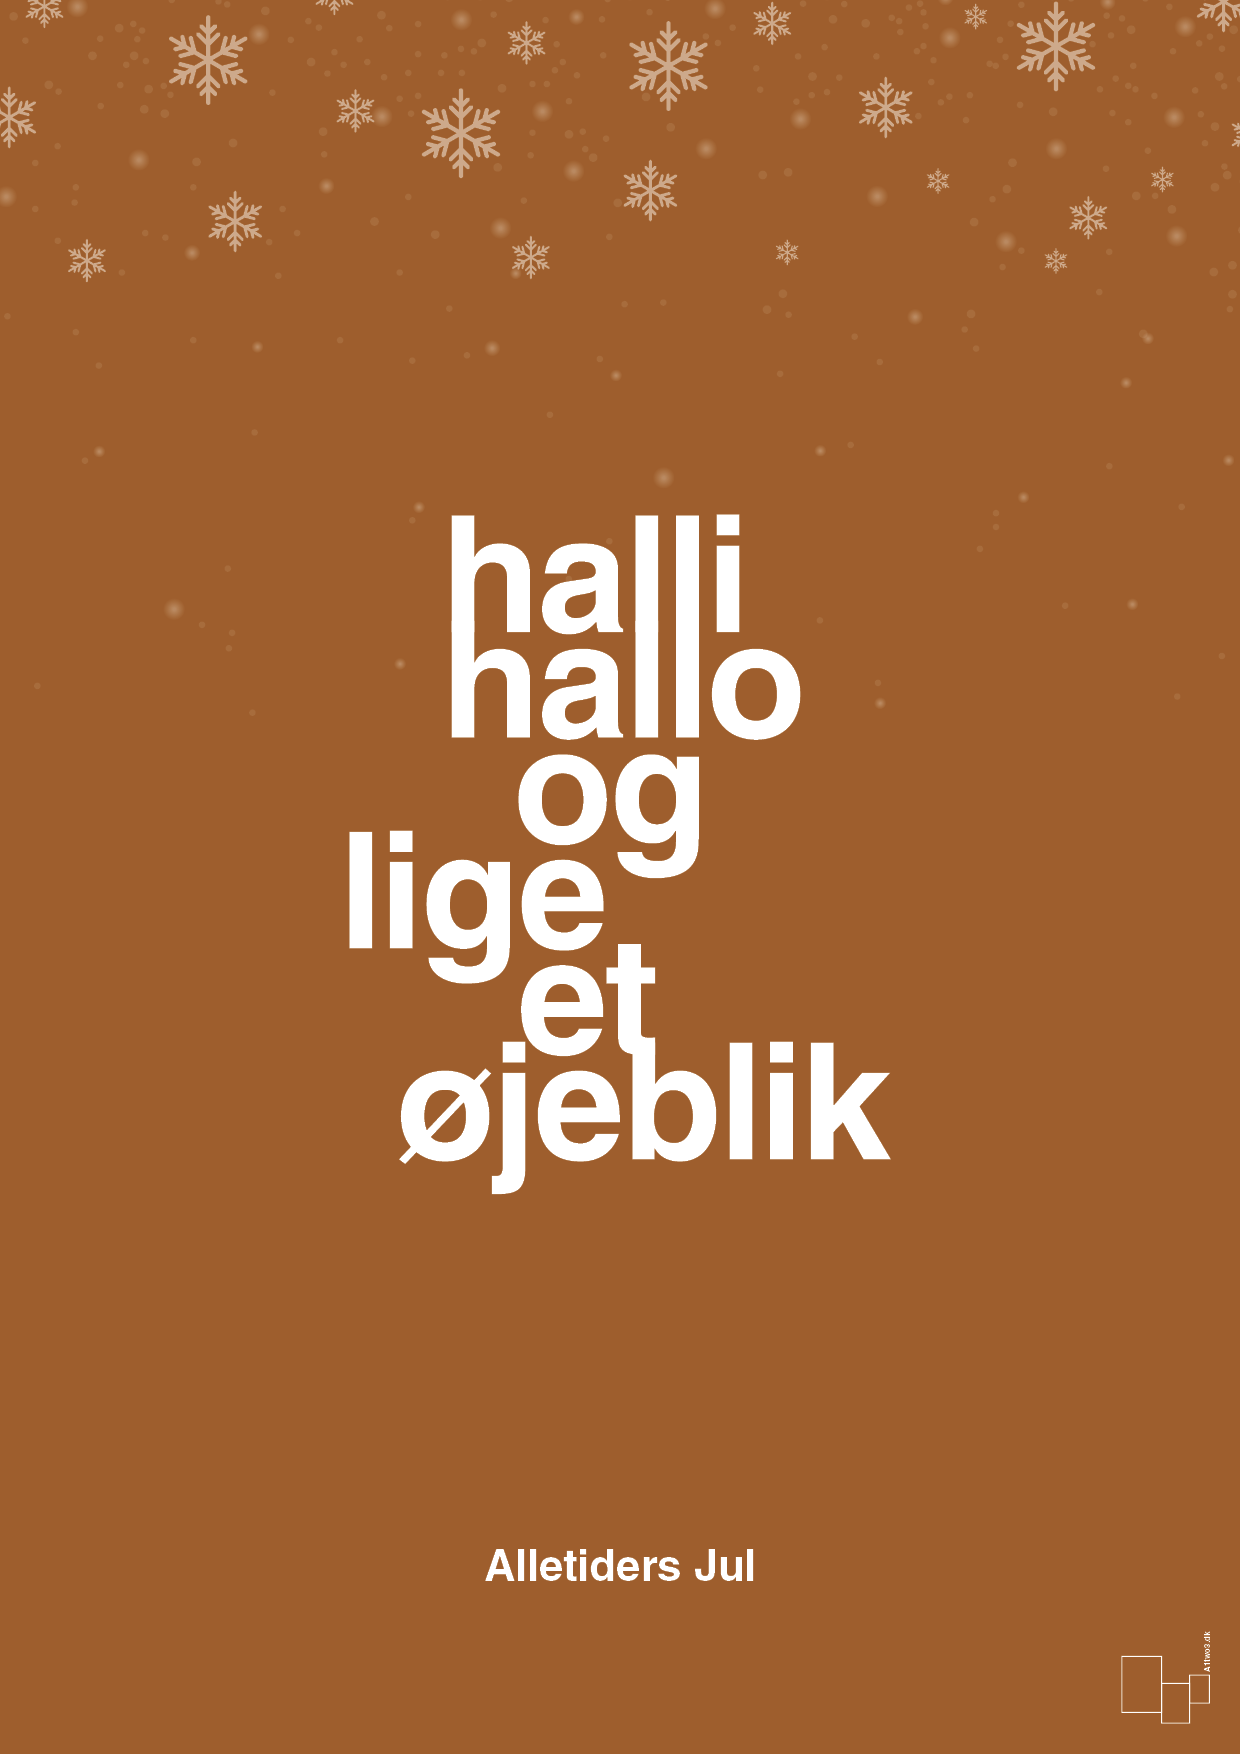 halli hallo og lige et øjeblik - Plakat med Begivenheder i Cognac